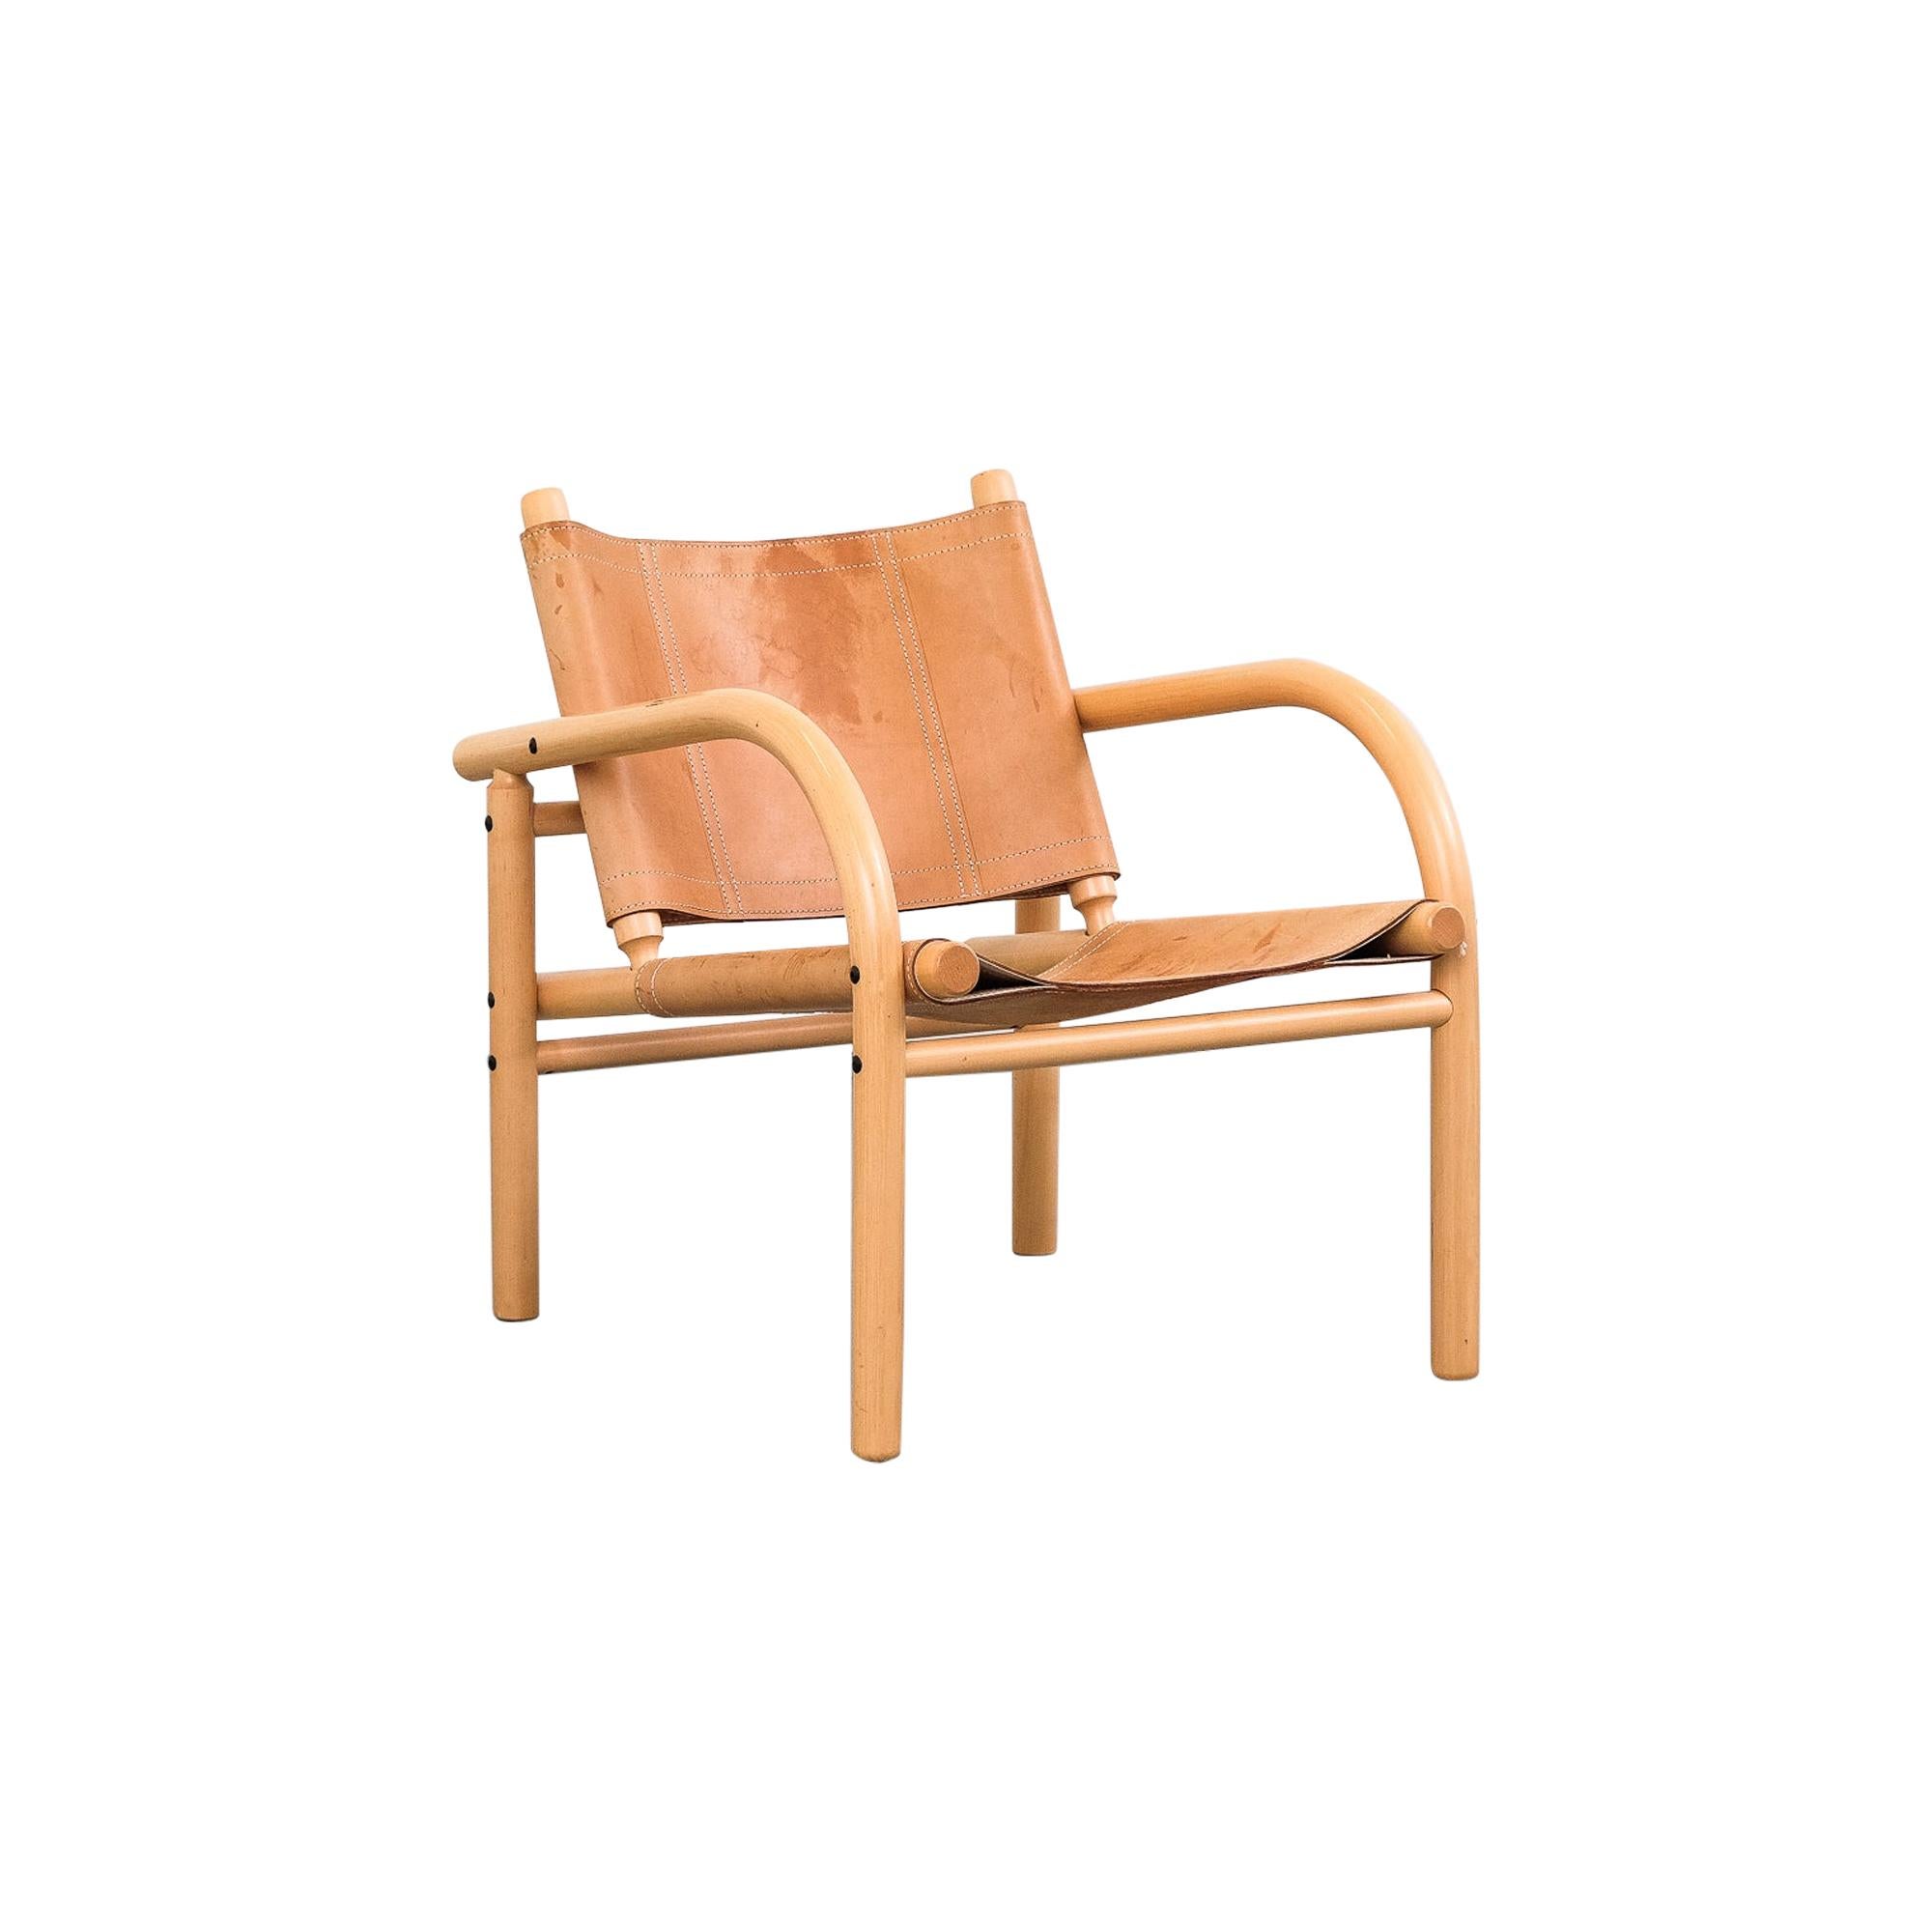 Ben af Schultén Model 411 Safari Lounge Chair, Artek, Finland, 1974 at  1stDibs | artek safarituoli, artek 411, artek safarituoli hinta